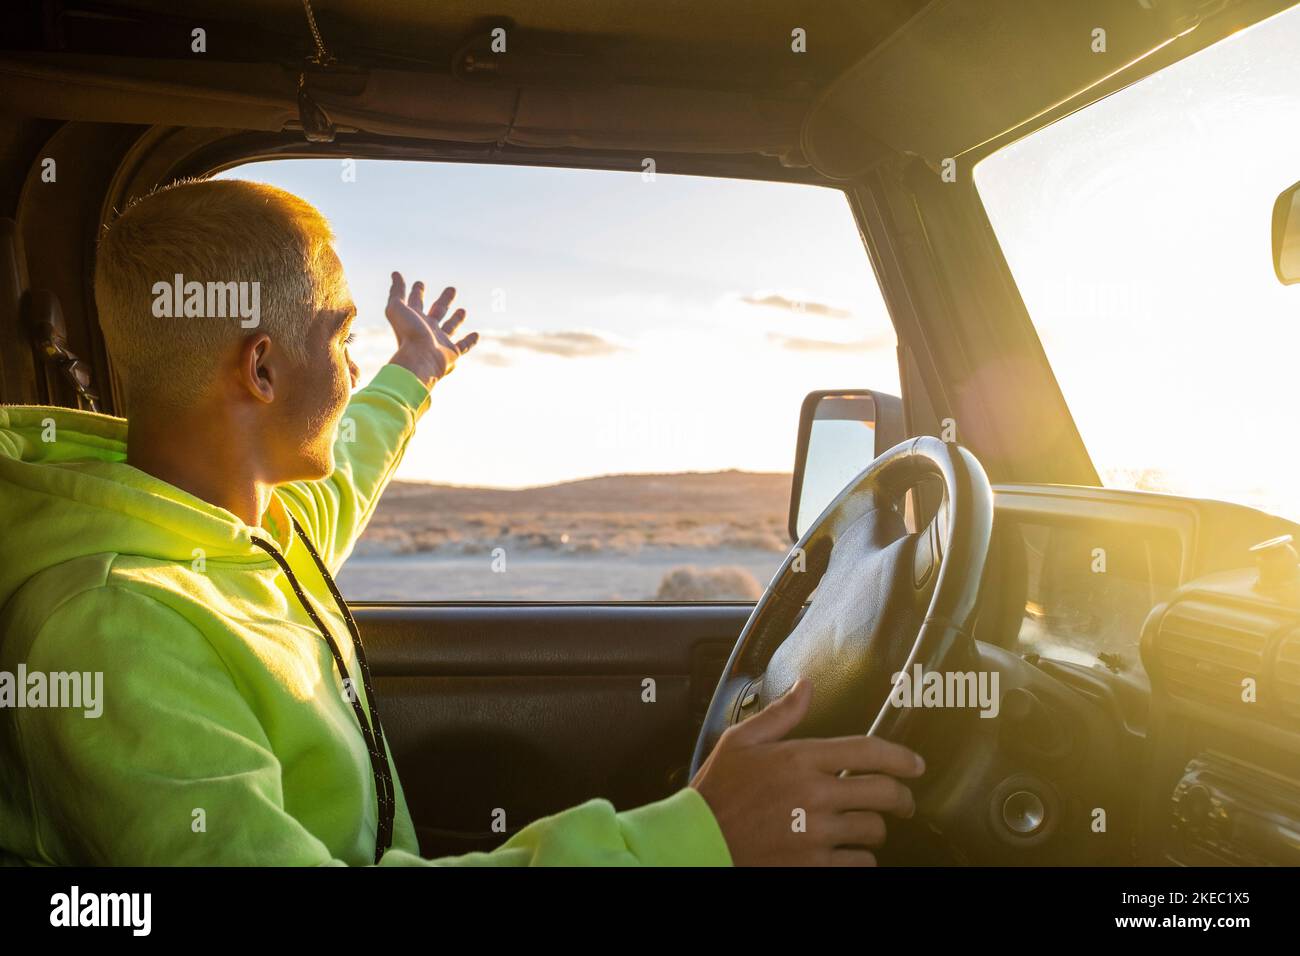 Ein junger Mann fährt mit seinem Auto und schaut auf den Sonnenuntergang, genießt seinen Urlaub und Urlaub allein im Freien - Reise- und Reisekonzept - Teenager mit Auto, das die Sonne betrachtet Stockfoto